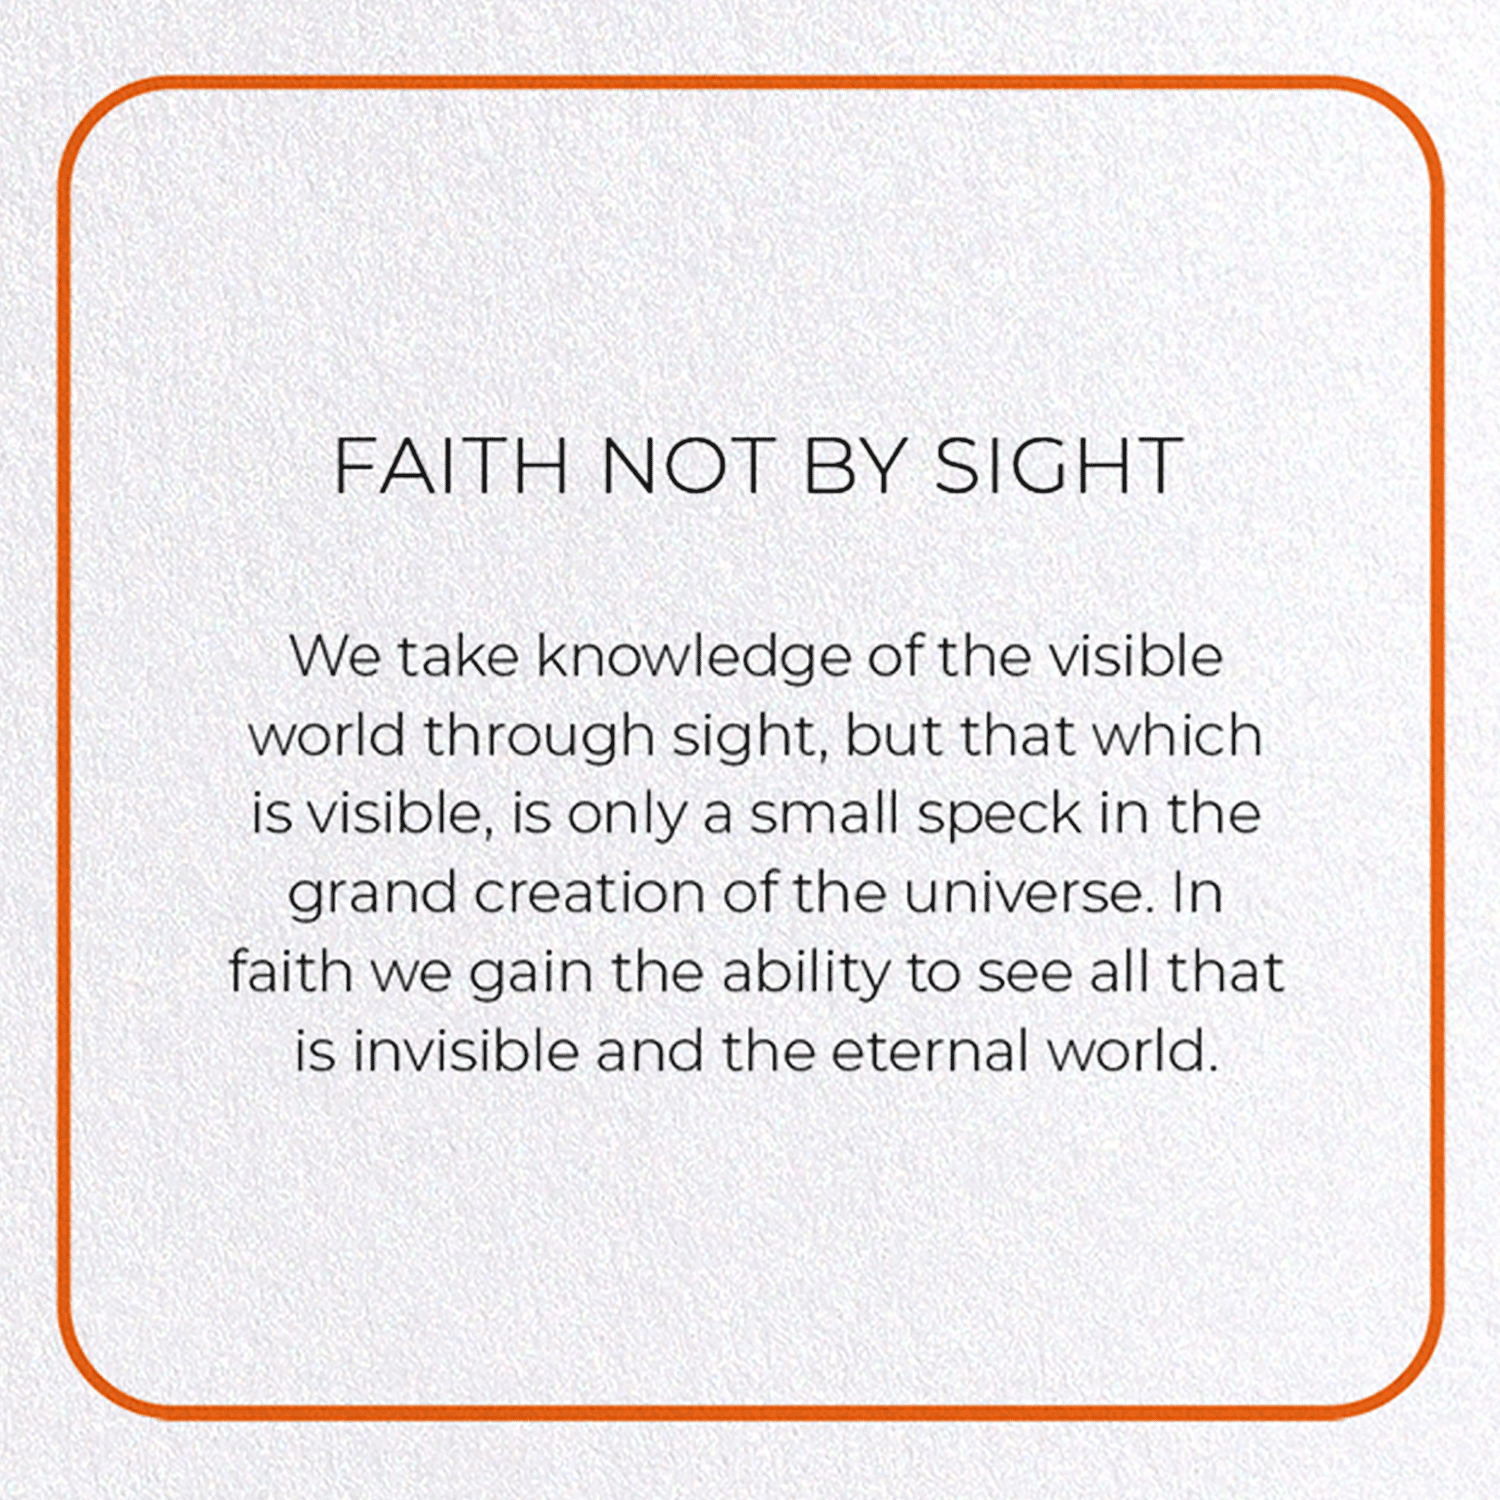 FAITH NOT BY SIGHT